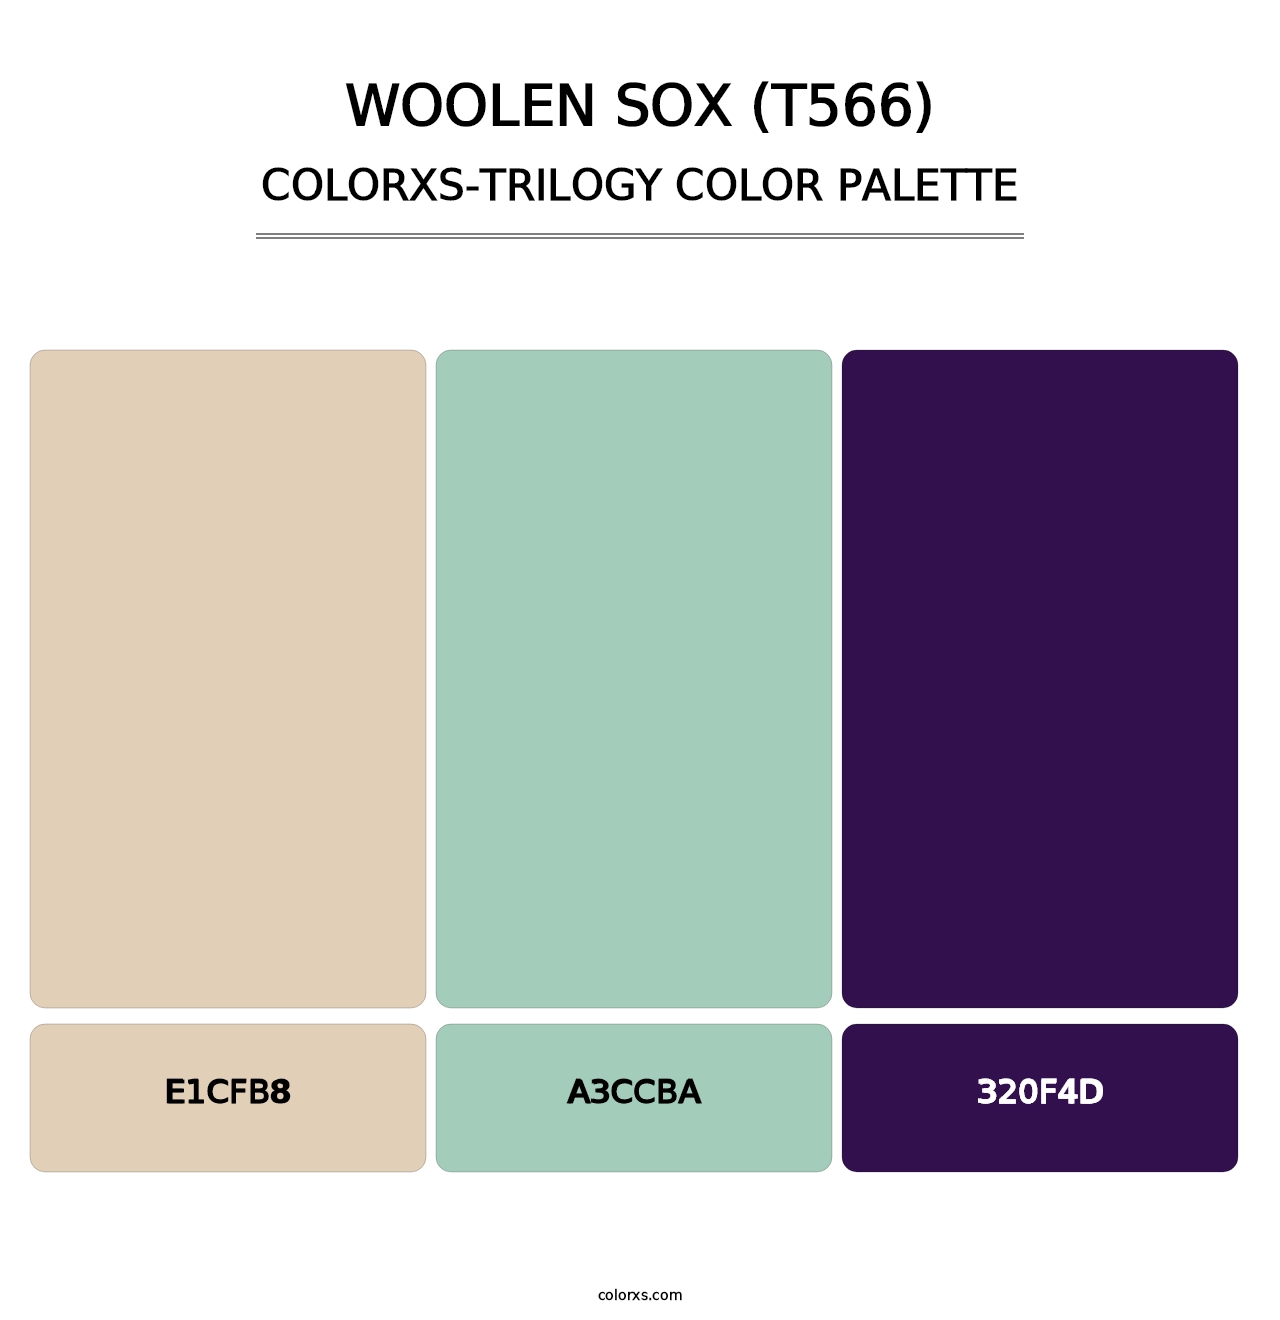 Woolen Sox (T566) - Colorxs Trilogy Palette